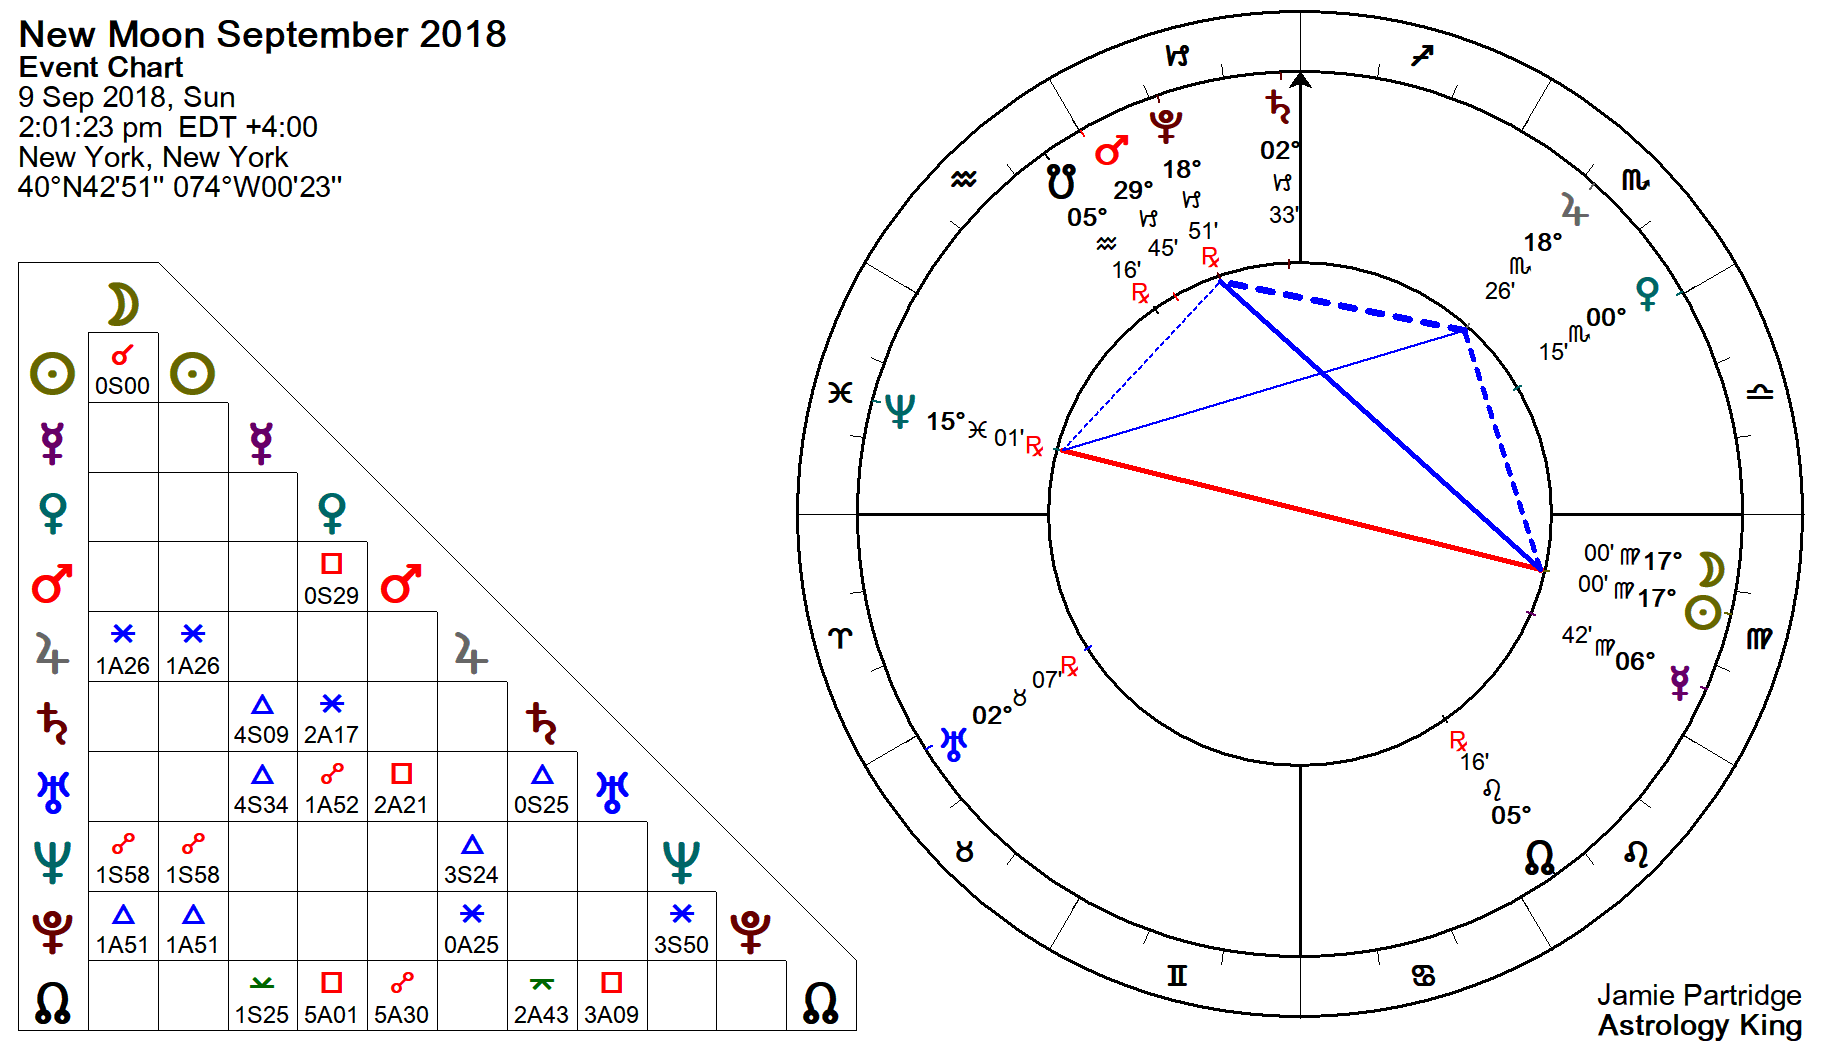 Horoscopes for the January 2019 New Moon in Capricorn